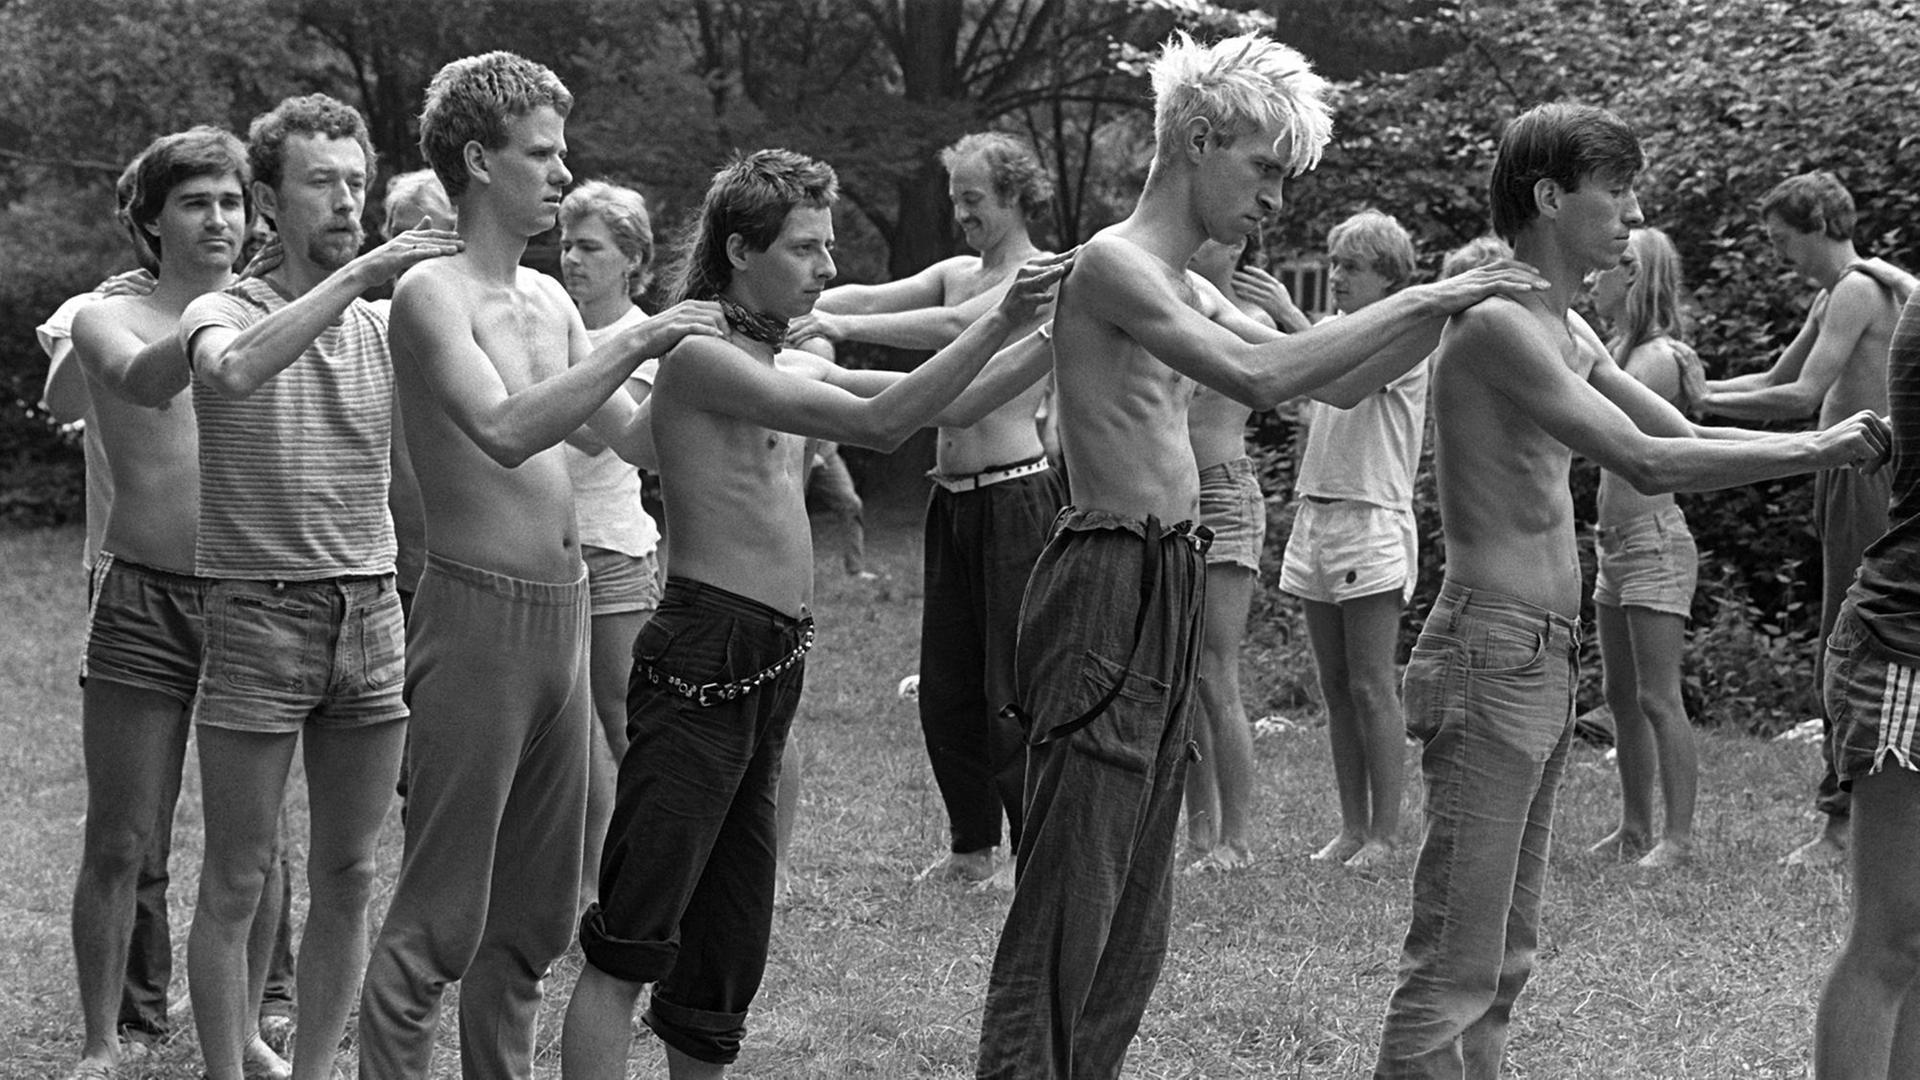 Zu Übungen der Selbsterfahrung und Diskussion des Selbstverständnisses der neuen Männer-Bewegung trafen sich am 18. und 19. August 1984 in Rossdorf bei Darmstadt etwa 100 Mitglieder von Männergruppen aus den In- und Ausland.